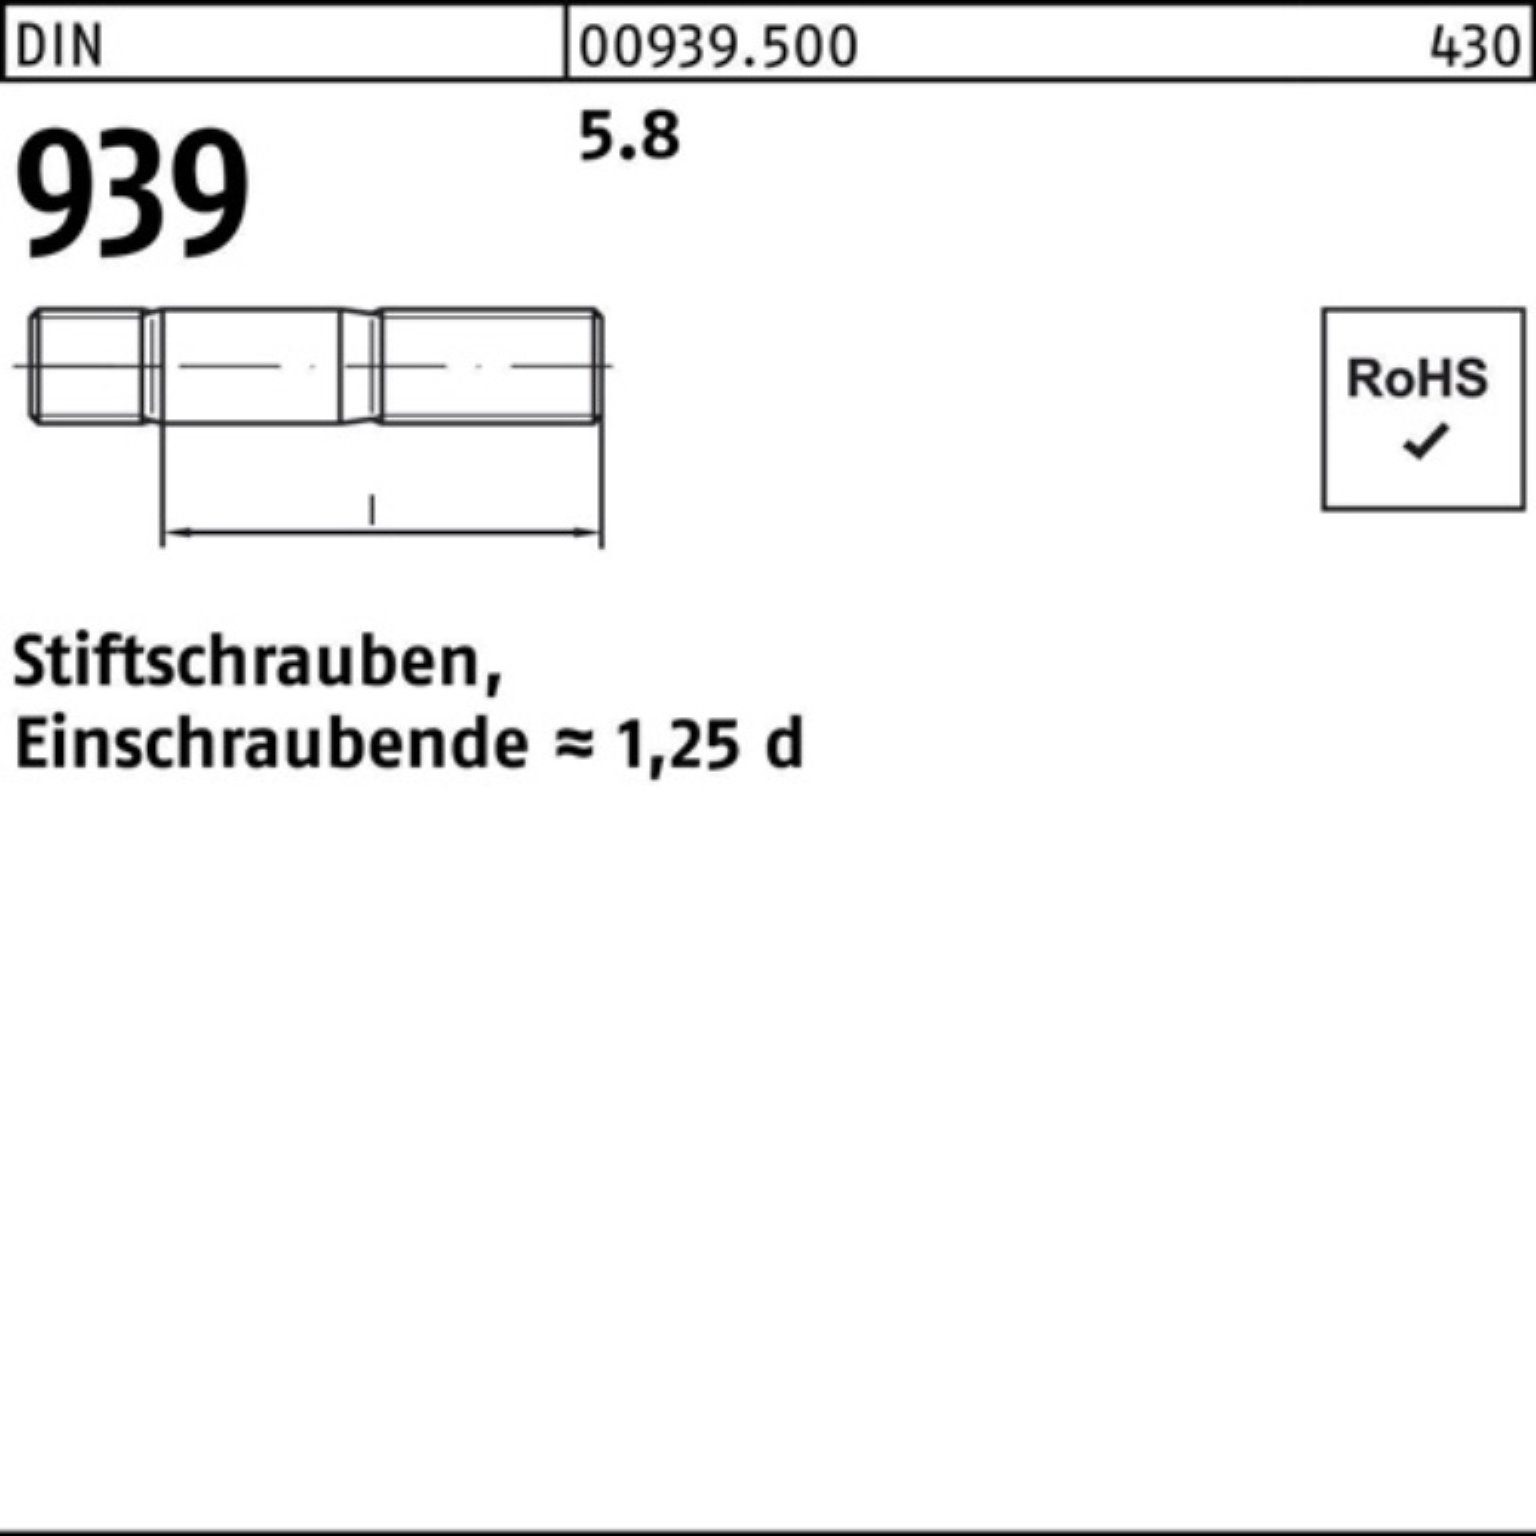 Reyher Stiftschraube 100er Pack Einschraubende=1,25d 939 100 Stiftschraube DIN S 50 5.8 M6x